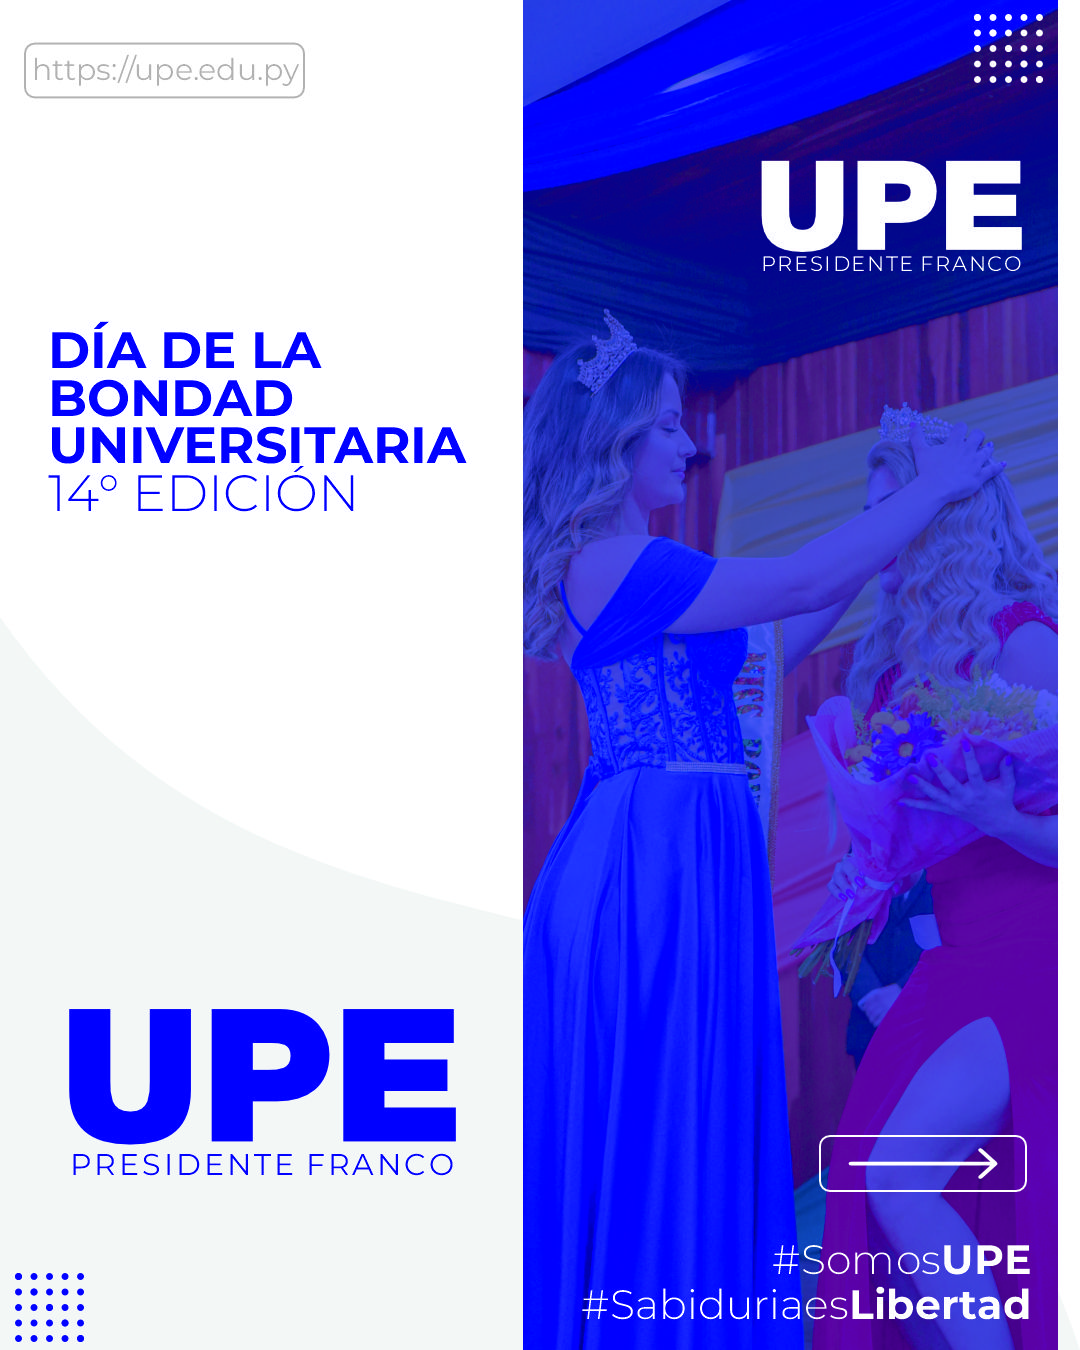 Día de la Bondad Universitaria en la UPE - 14ª Edición 